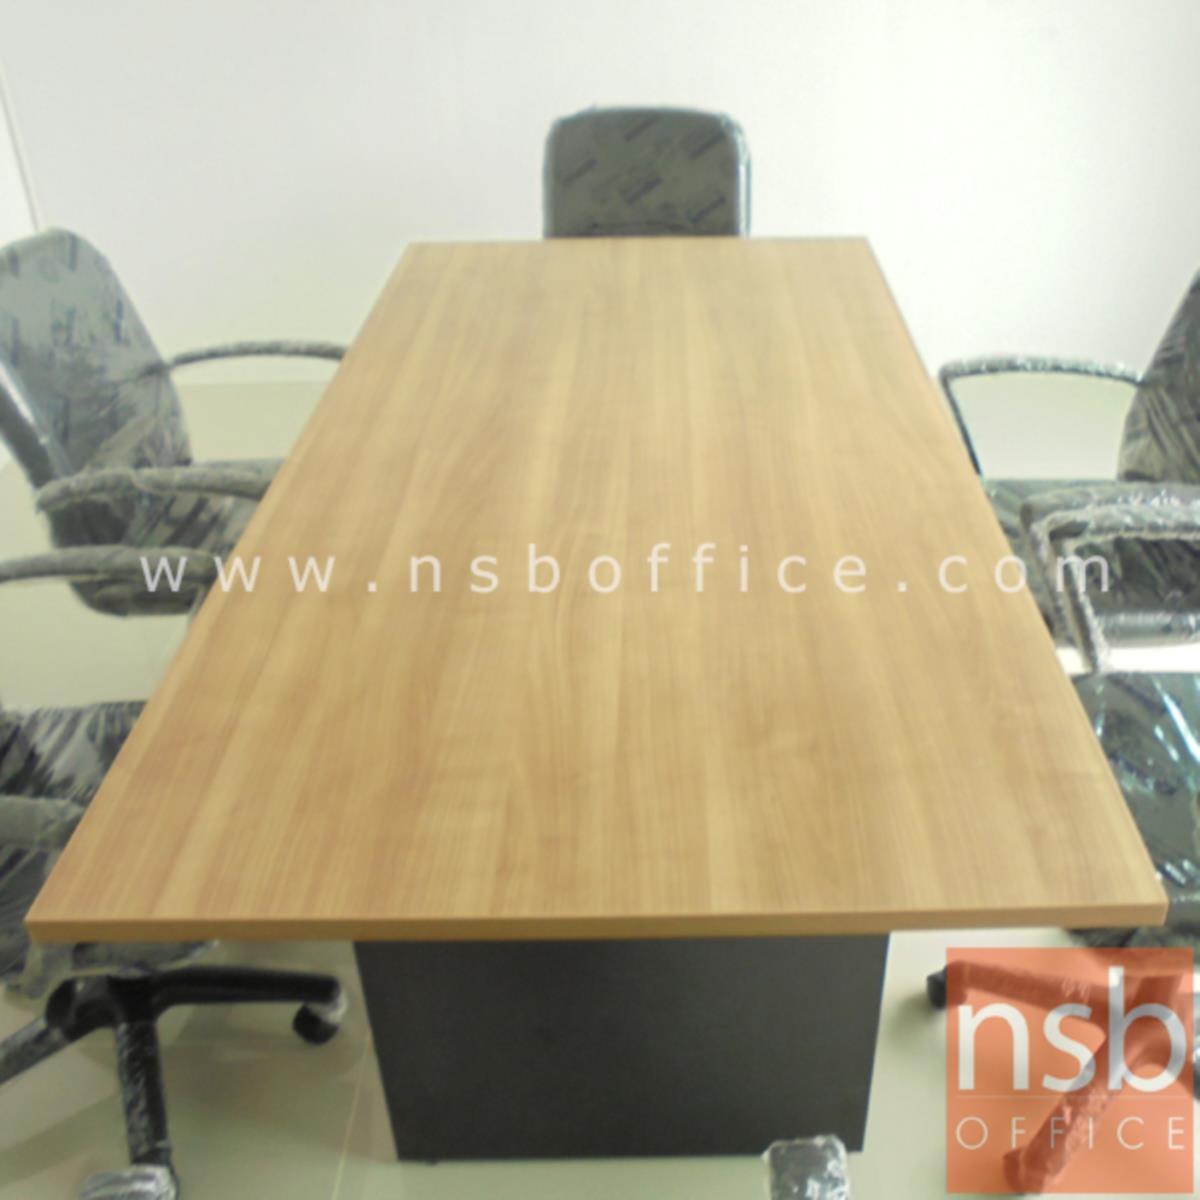 โต๊ะประชุมทรงสี่เหลี่ยม   6, 8, 10 ที่นั่ง ขนาด 180W, 200W, 240W cm.  เมลามีน